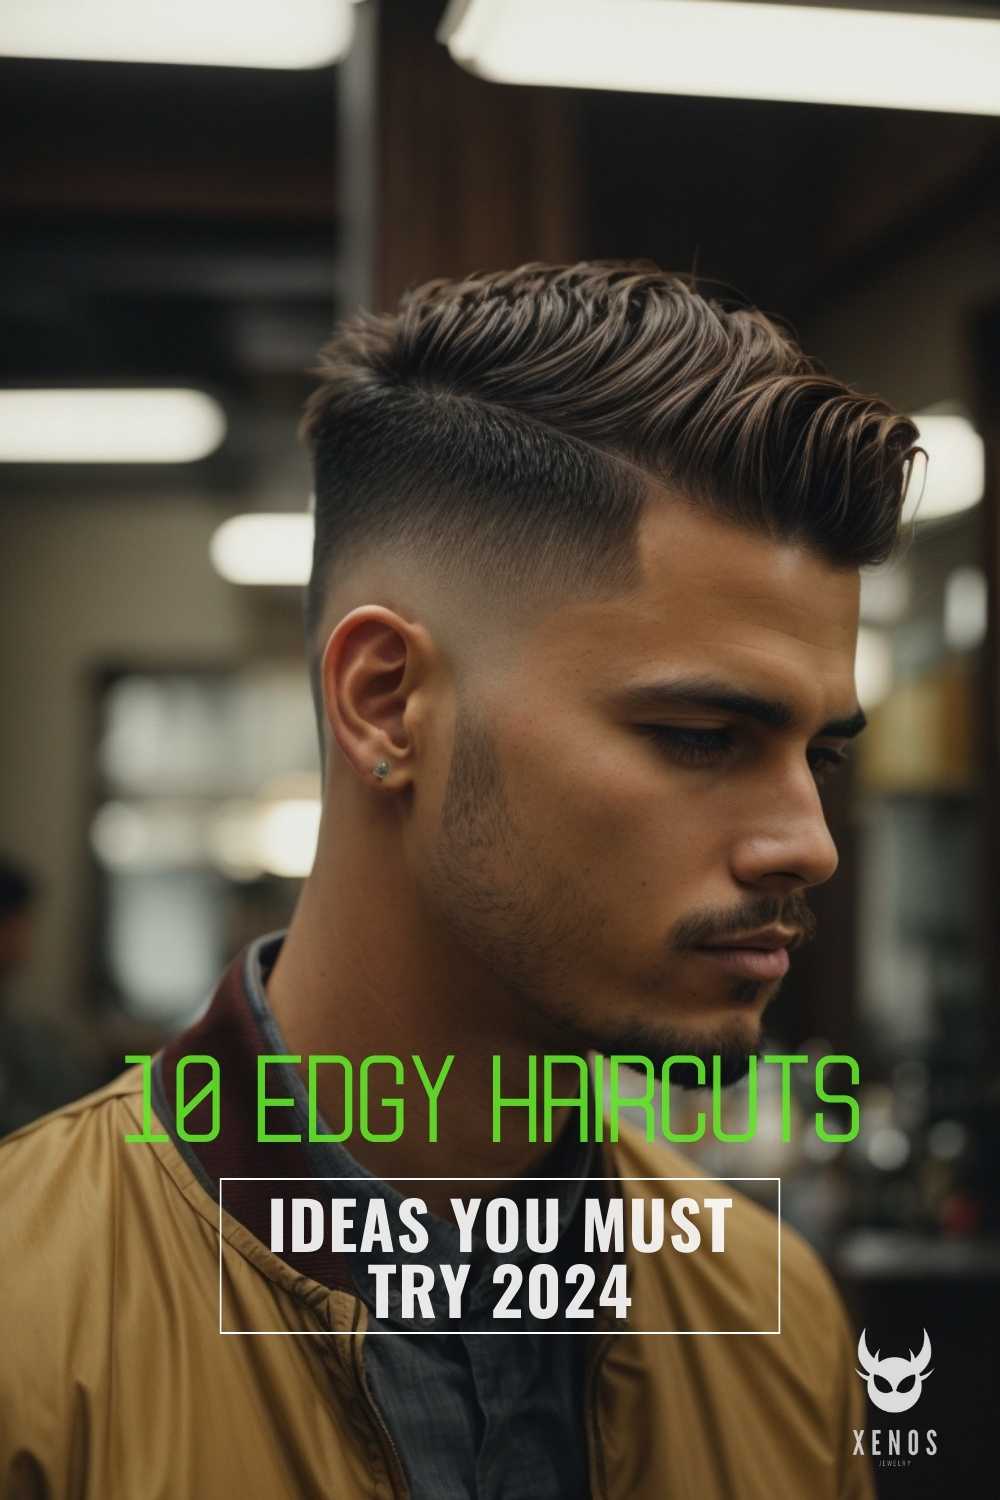 Hairstyles Attract Different Men | TikTok